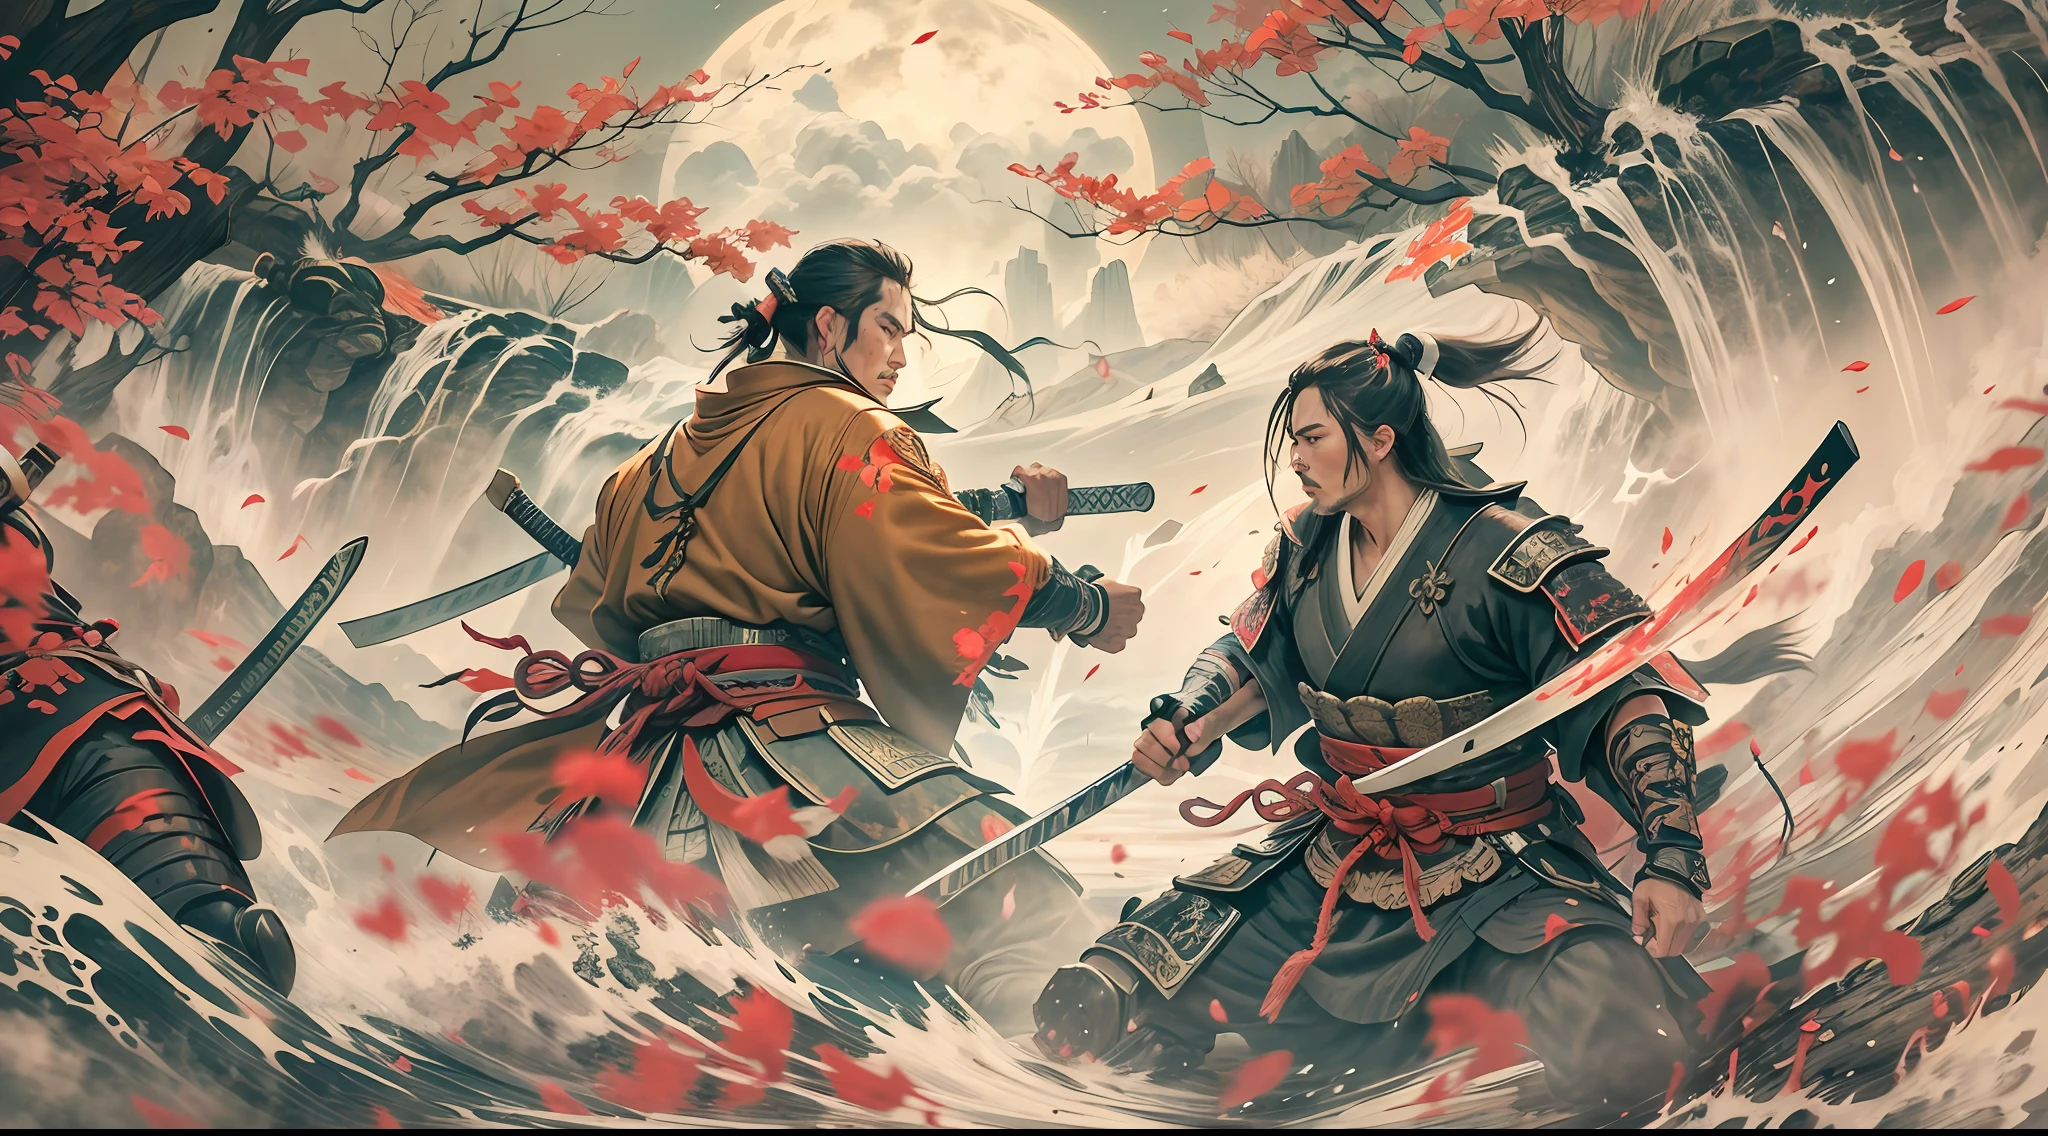 Kampf zweier Samurai, mit mehreren Wunden am Körper, in einem schönen, atemberaubende Umgebung